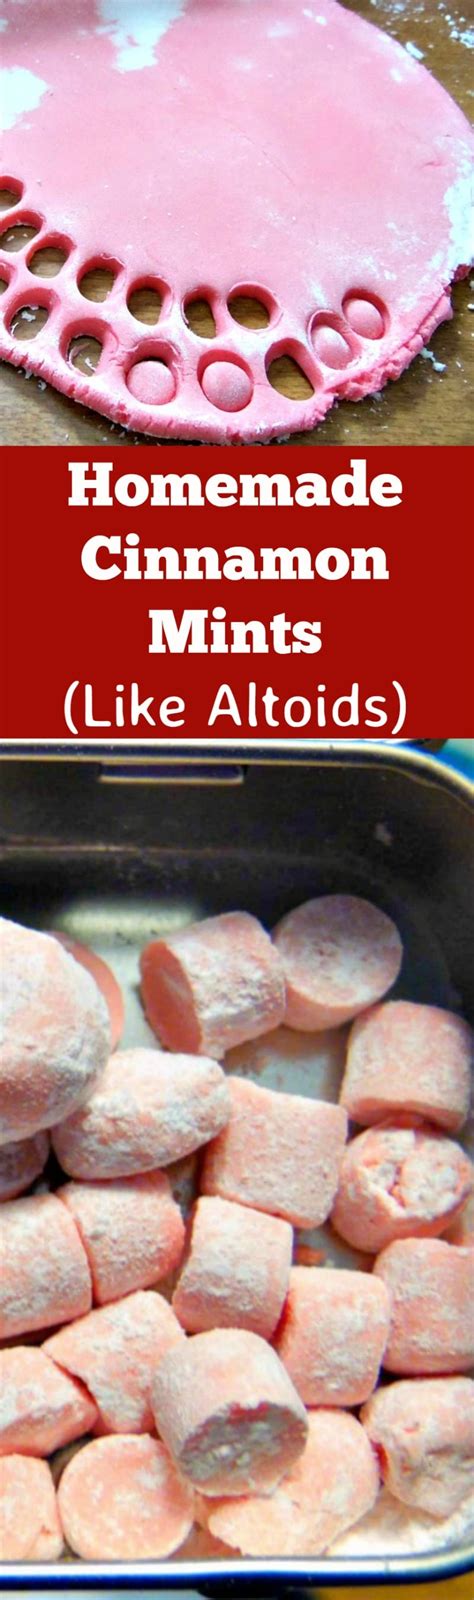 Homemade Cinnamon Mints Like Altoids Lovefoodies